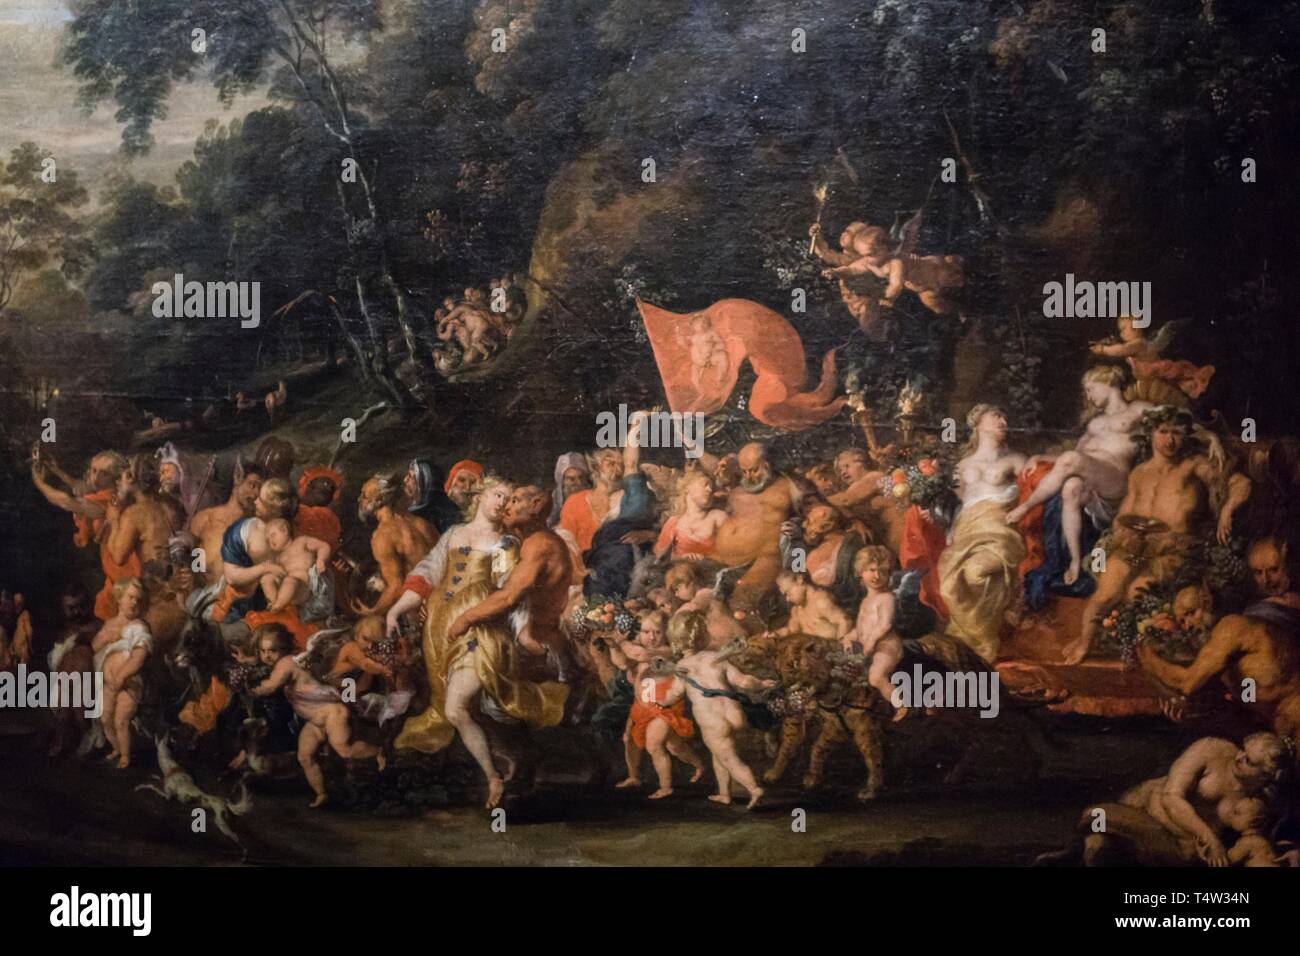 El triunfo de Baco, Jan Thomas van Yperen, 1650, óleo sobre tela, Museo Nacional de Bellas Artes (MNBA) ,Buenos Aires, republica Argentina, cono sur, South America. Stock Photo